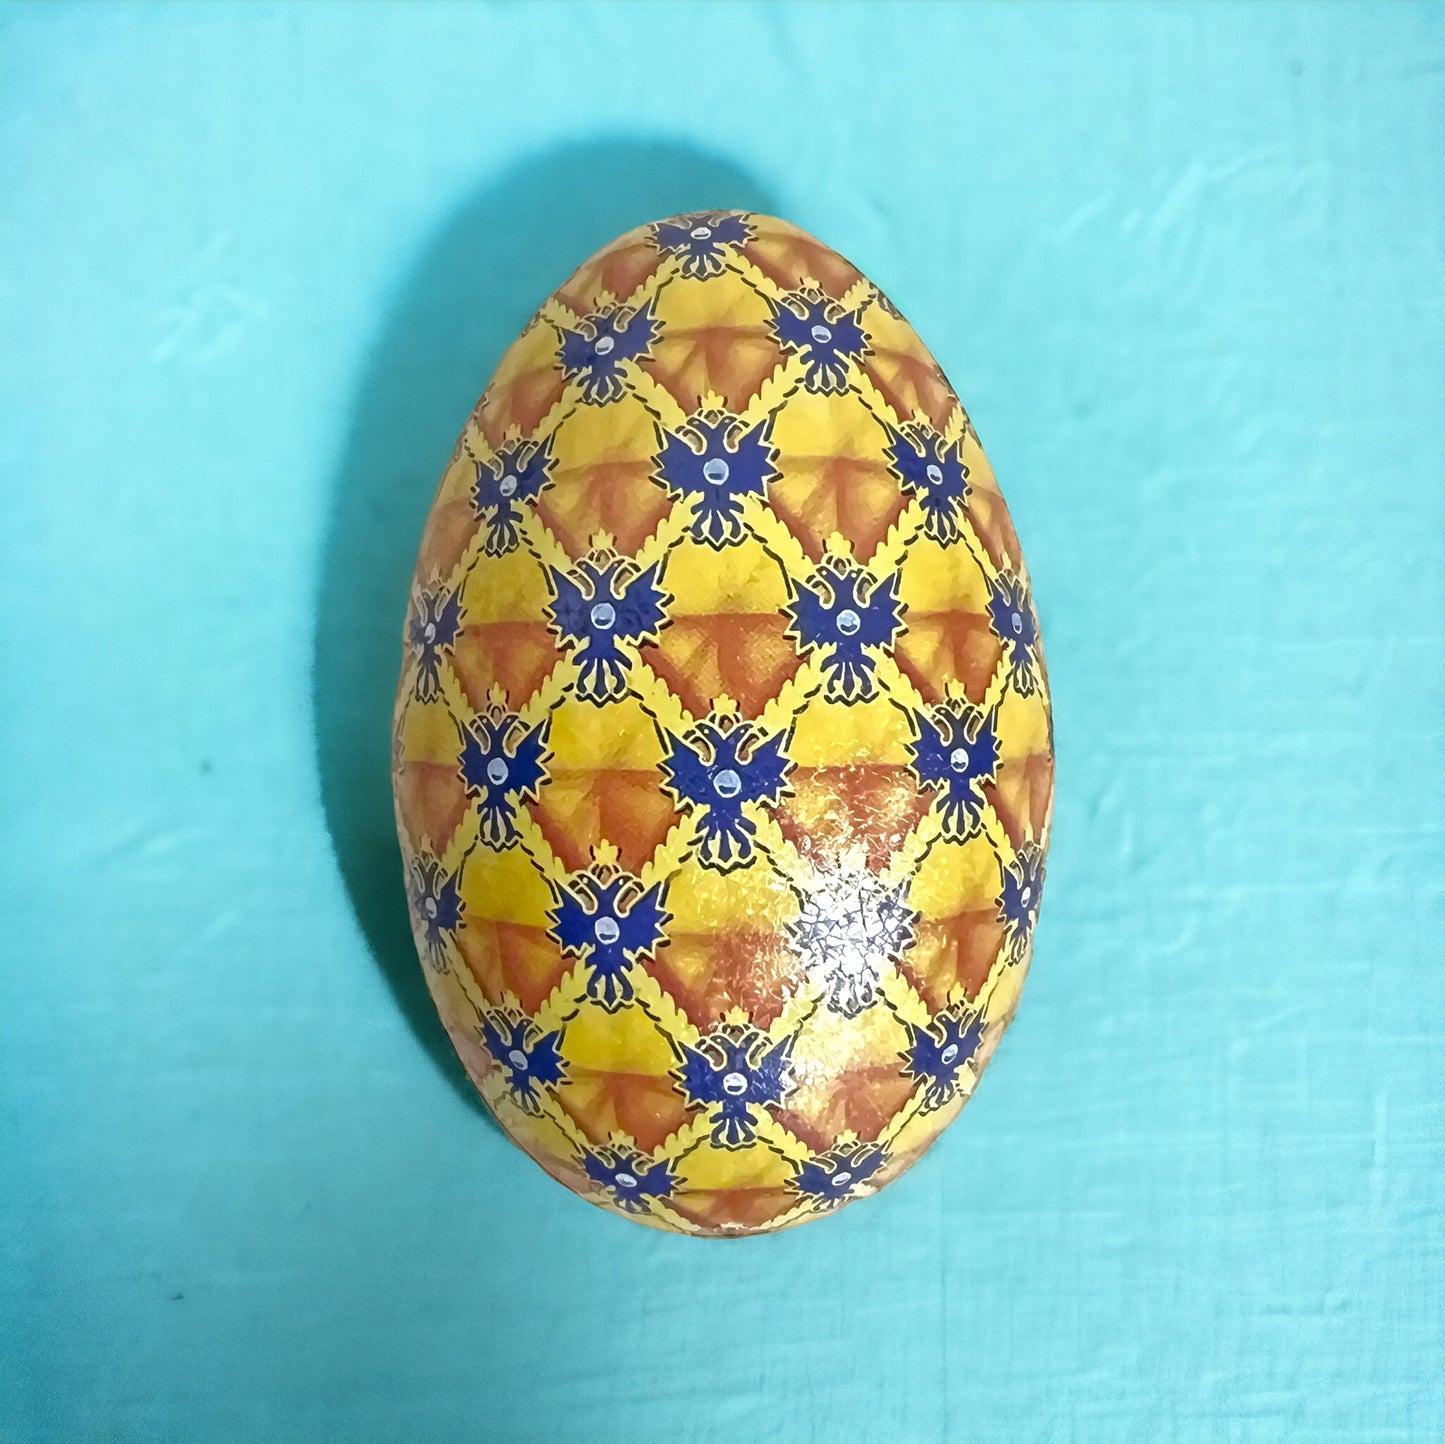 Le Petit Duc Fabergé Egg Tin, 3.5 oz